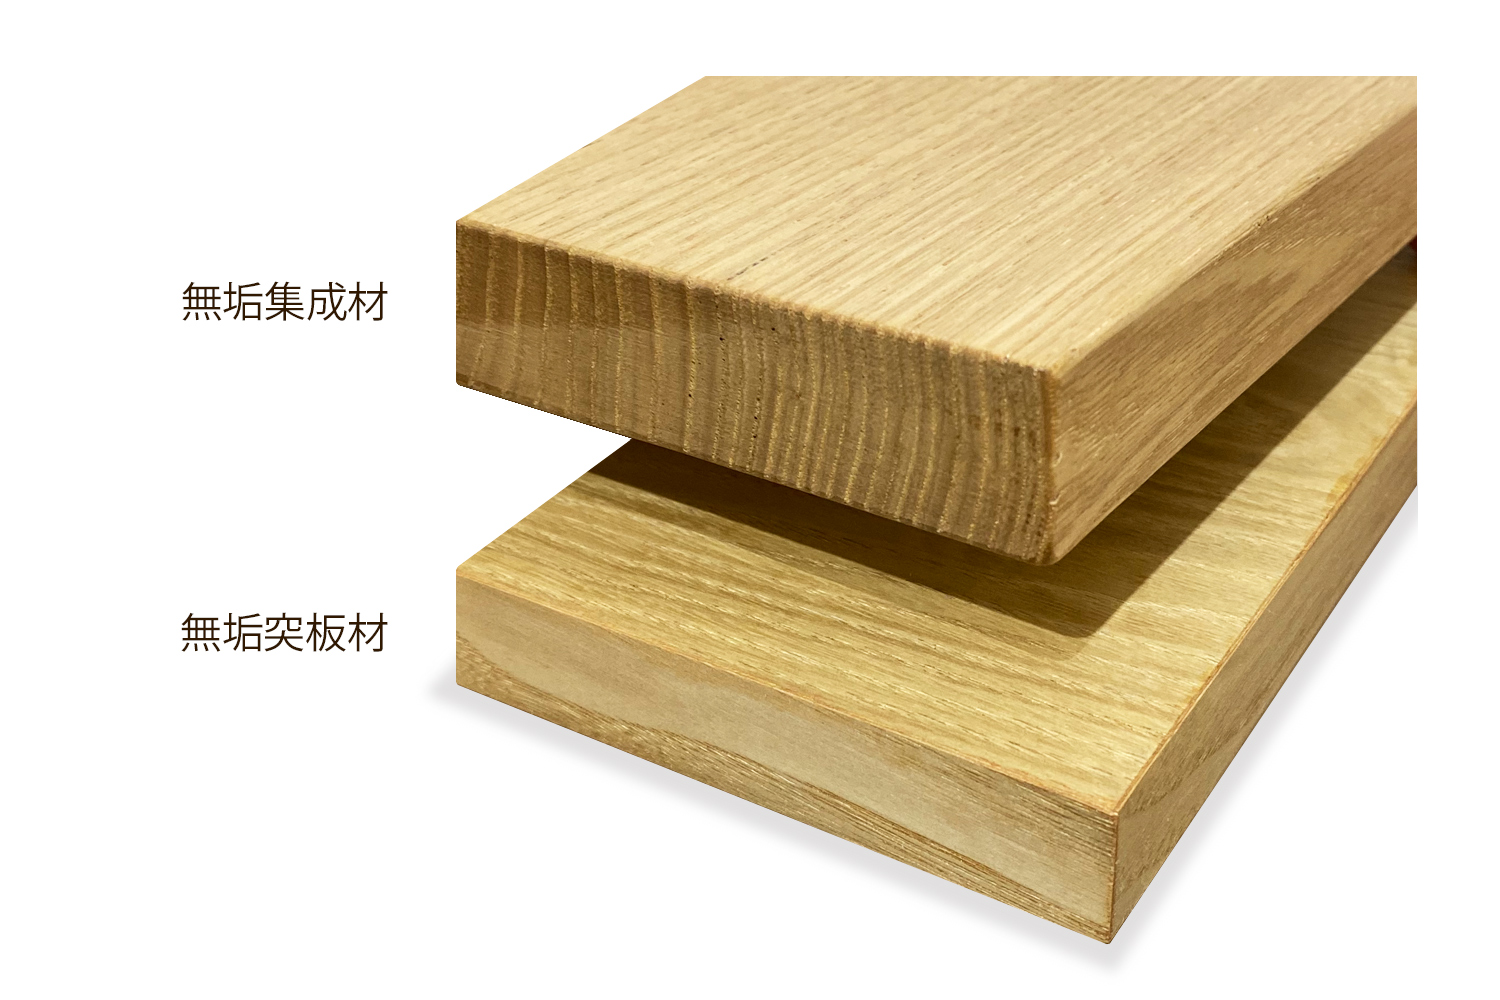 木材の加工、違いが分かると家具選びがもっと楽しみに